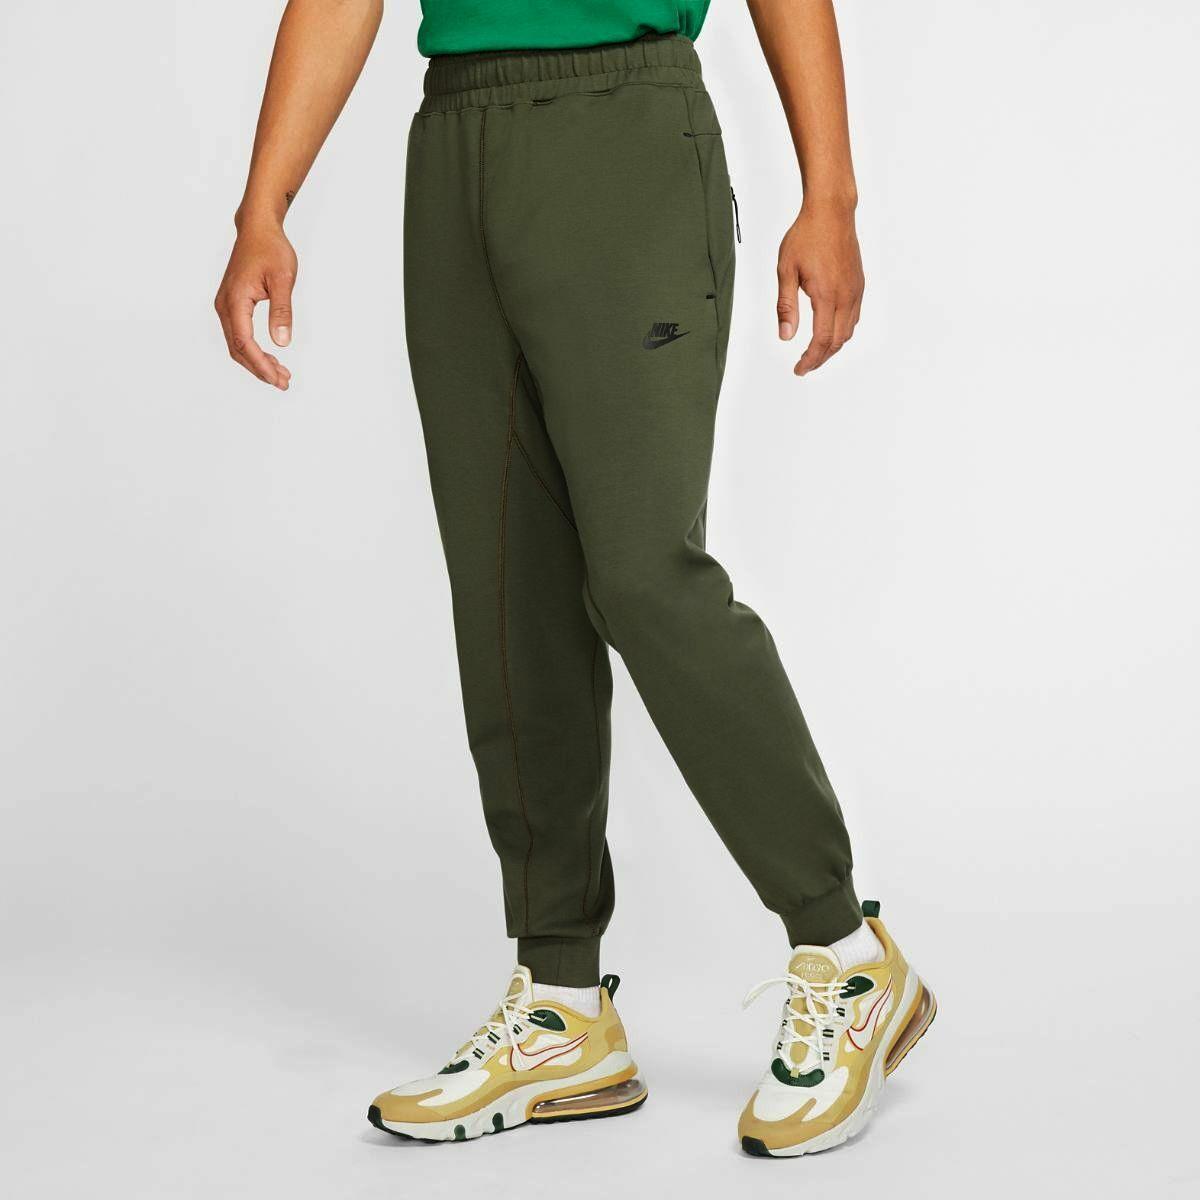 Nike Sportswear Joggers Pants Dark Olive Green CJ4280 Medium